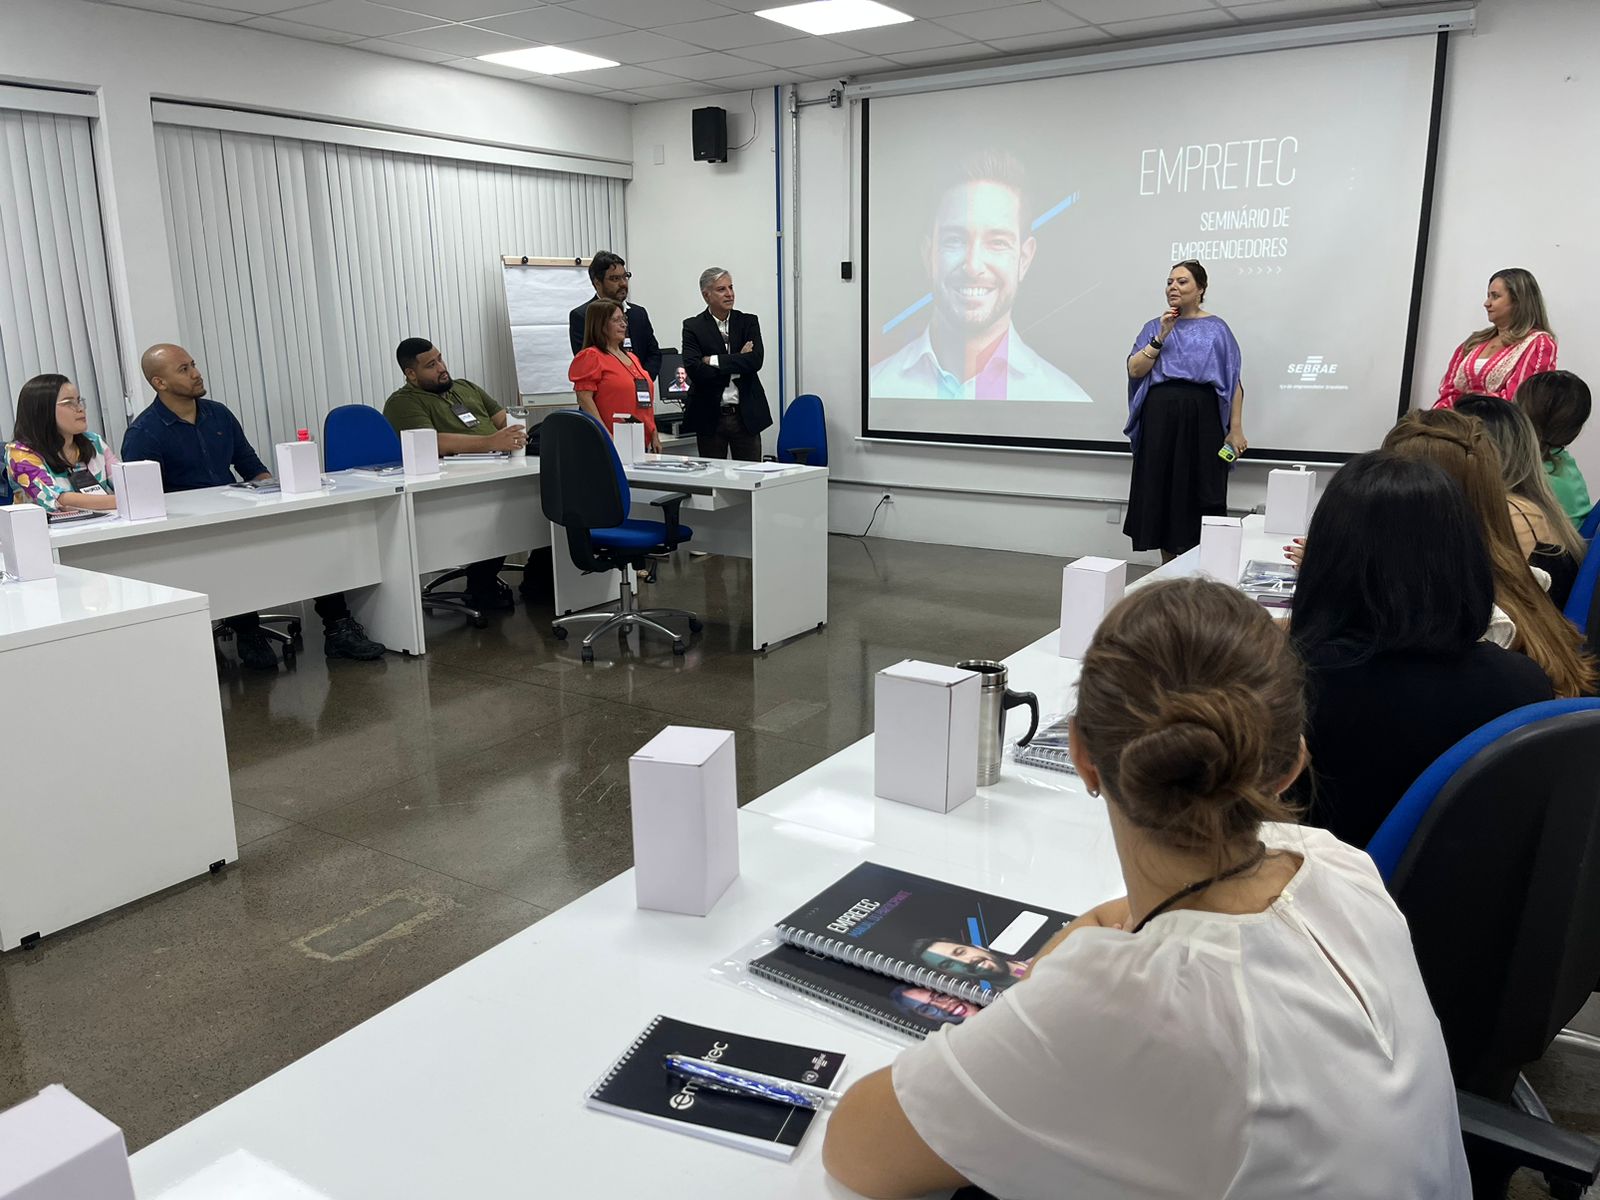 Prefeitura de Manaus inicia nova turma da capacitacao empreendedora Empretec 2